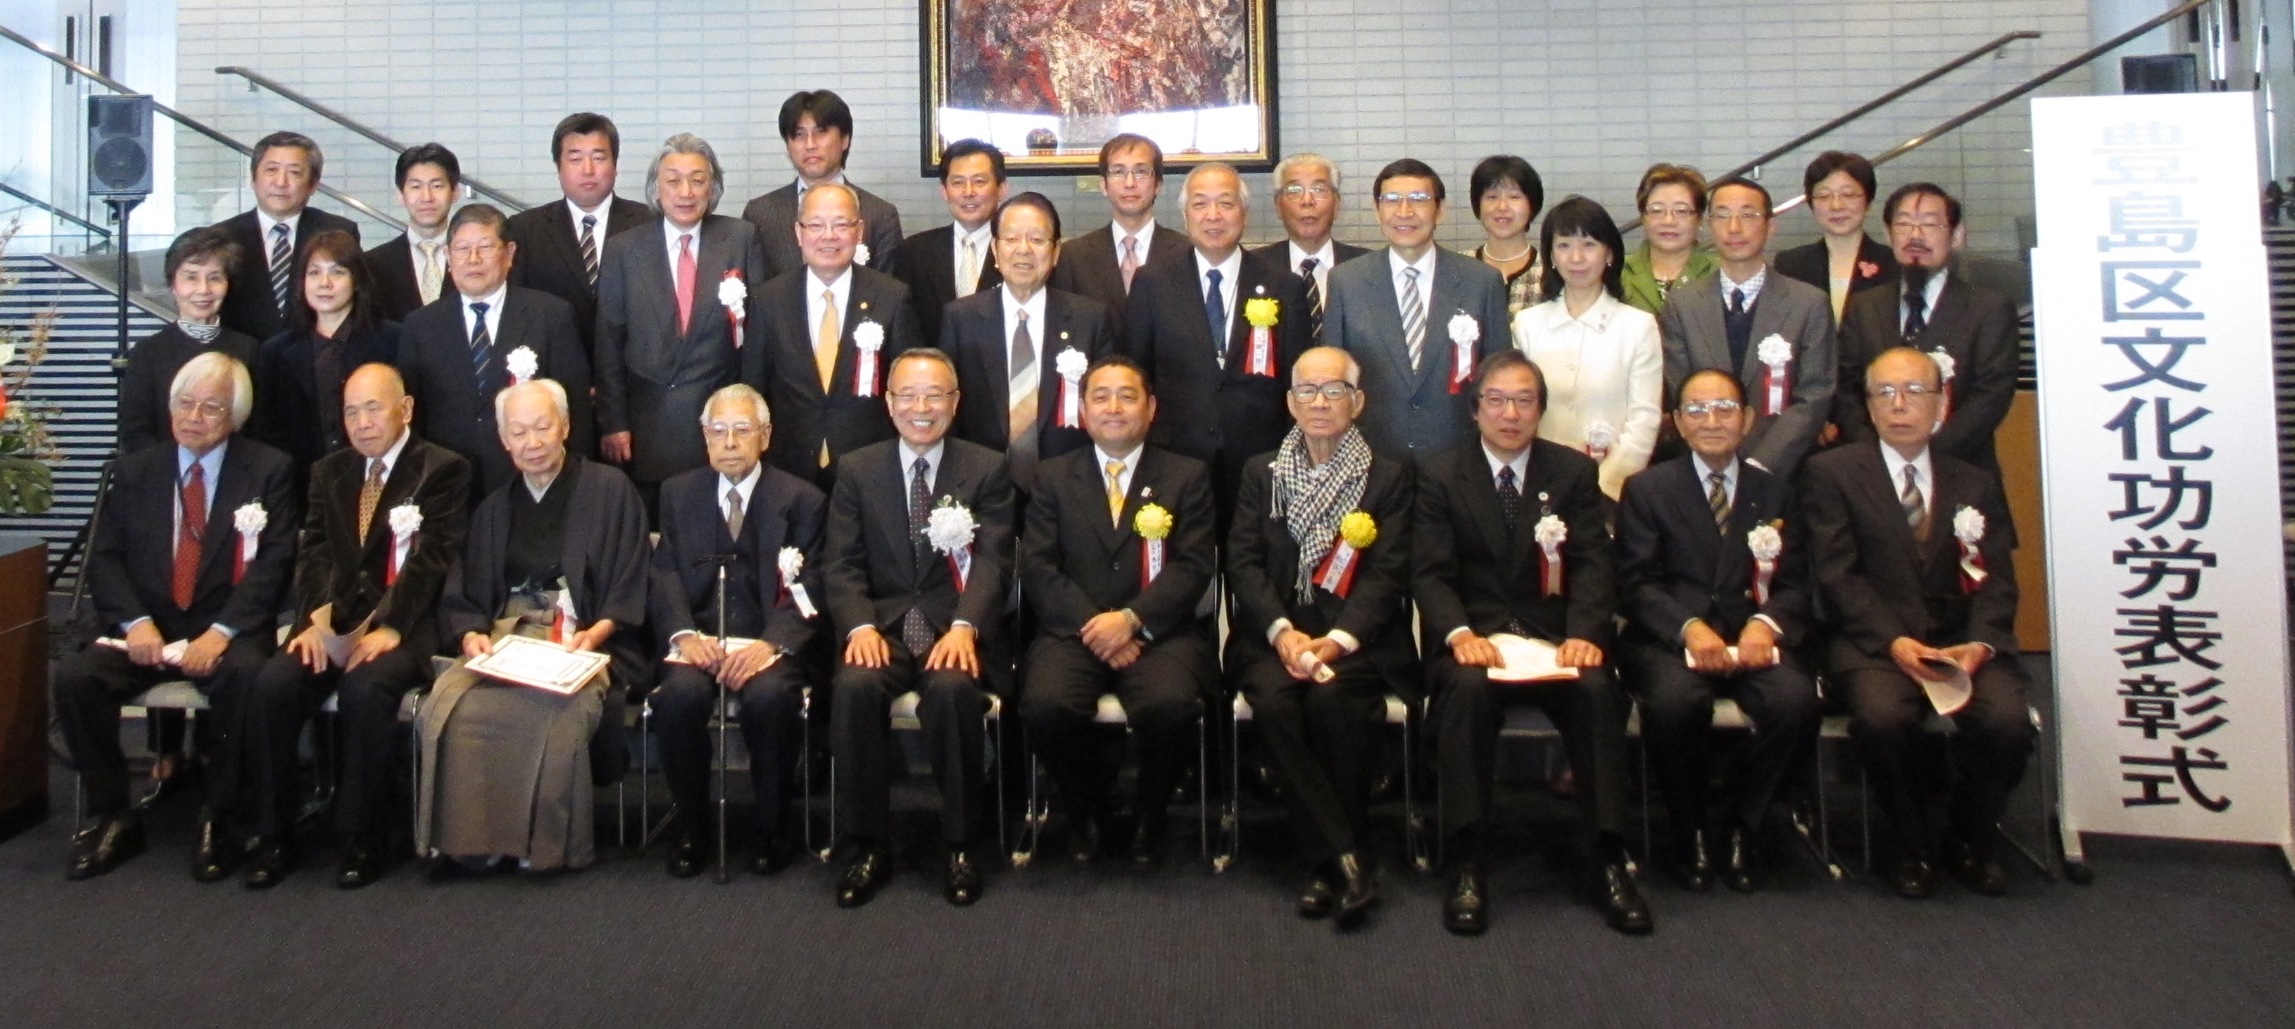 表彰式の記念撮影。後列の左から3番目が池田青年部幹事長